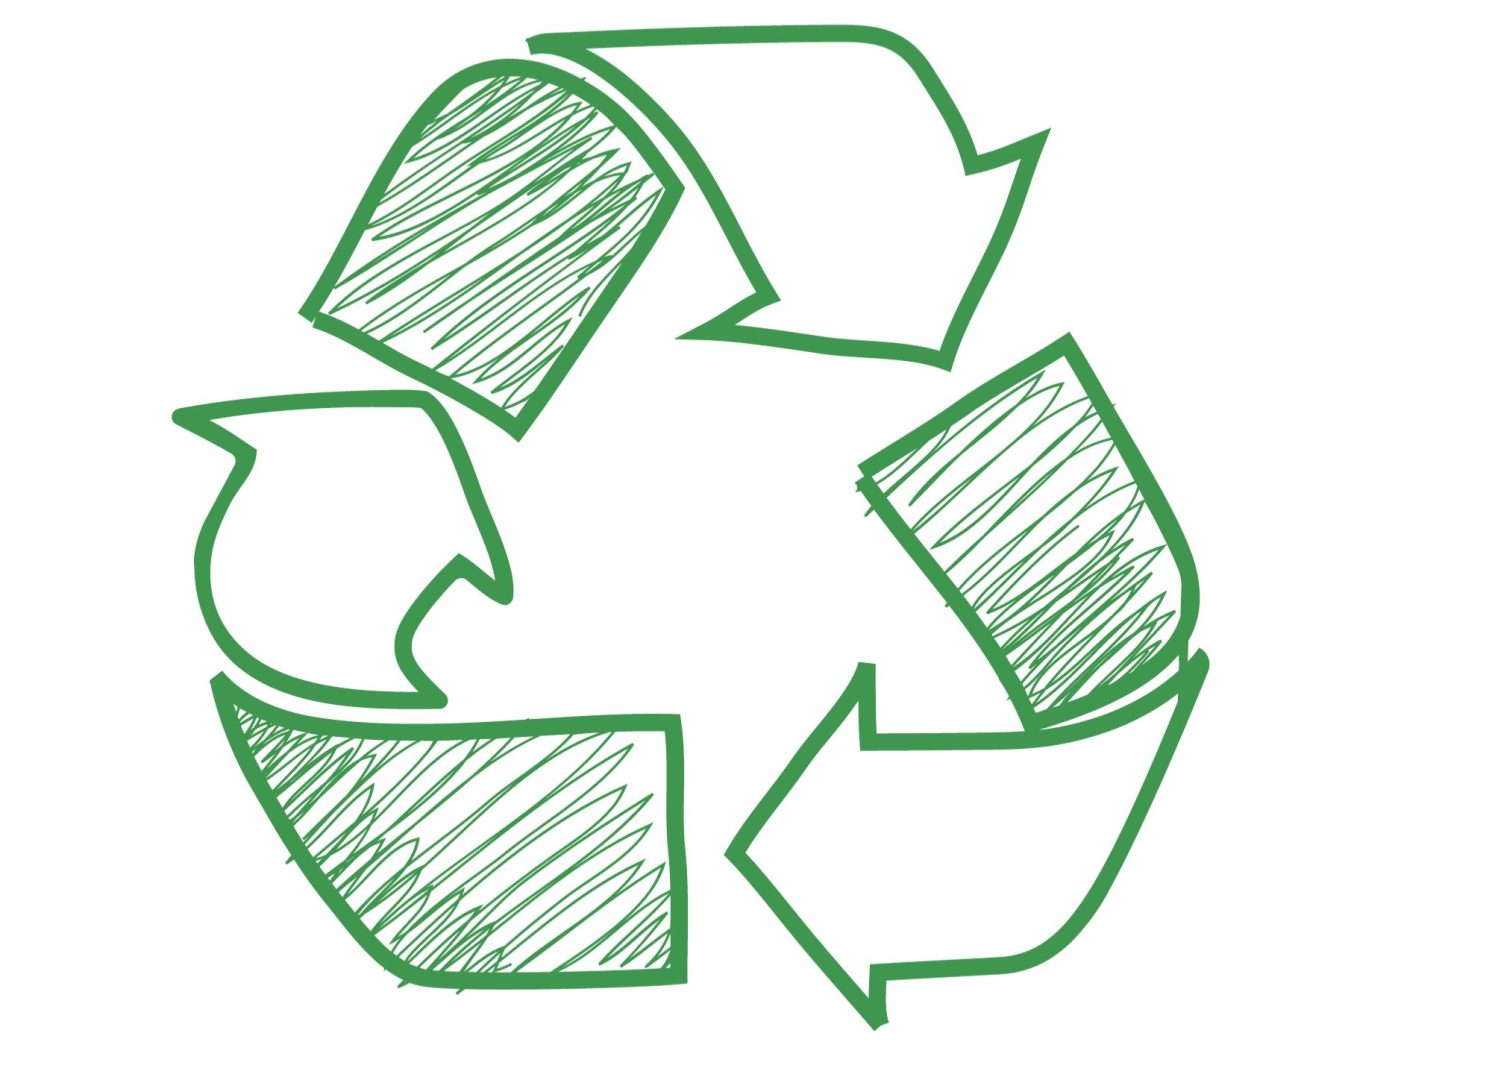 Illustration du logo recyclage en vert avec les 3 flèches qui se rejoignent.